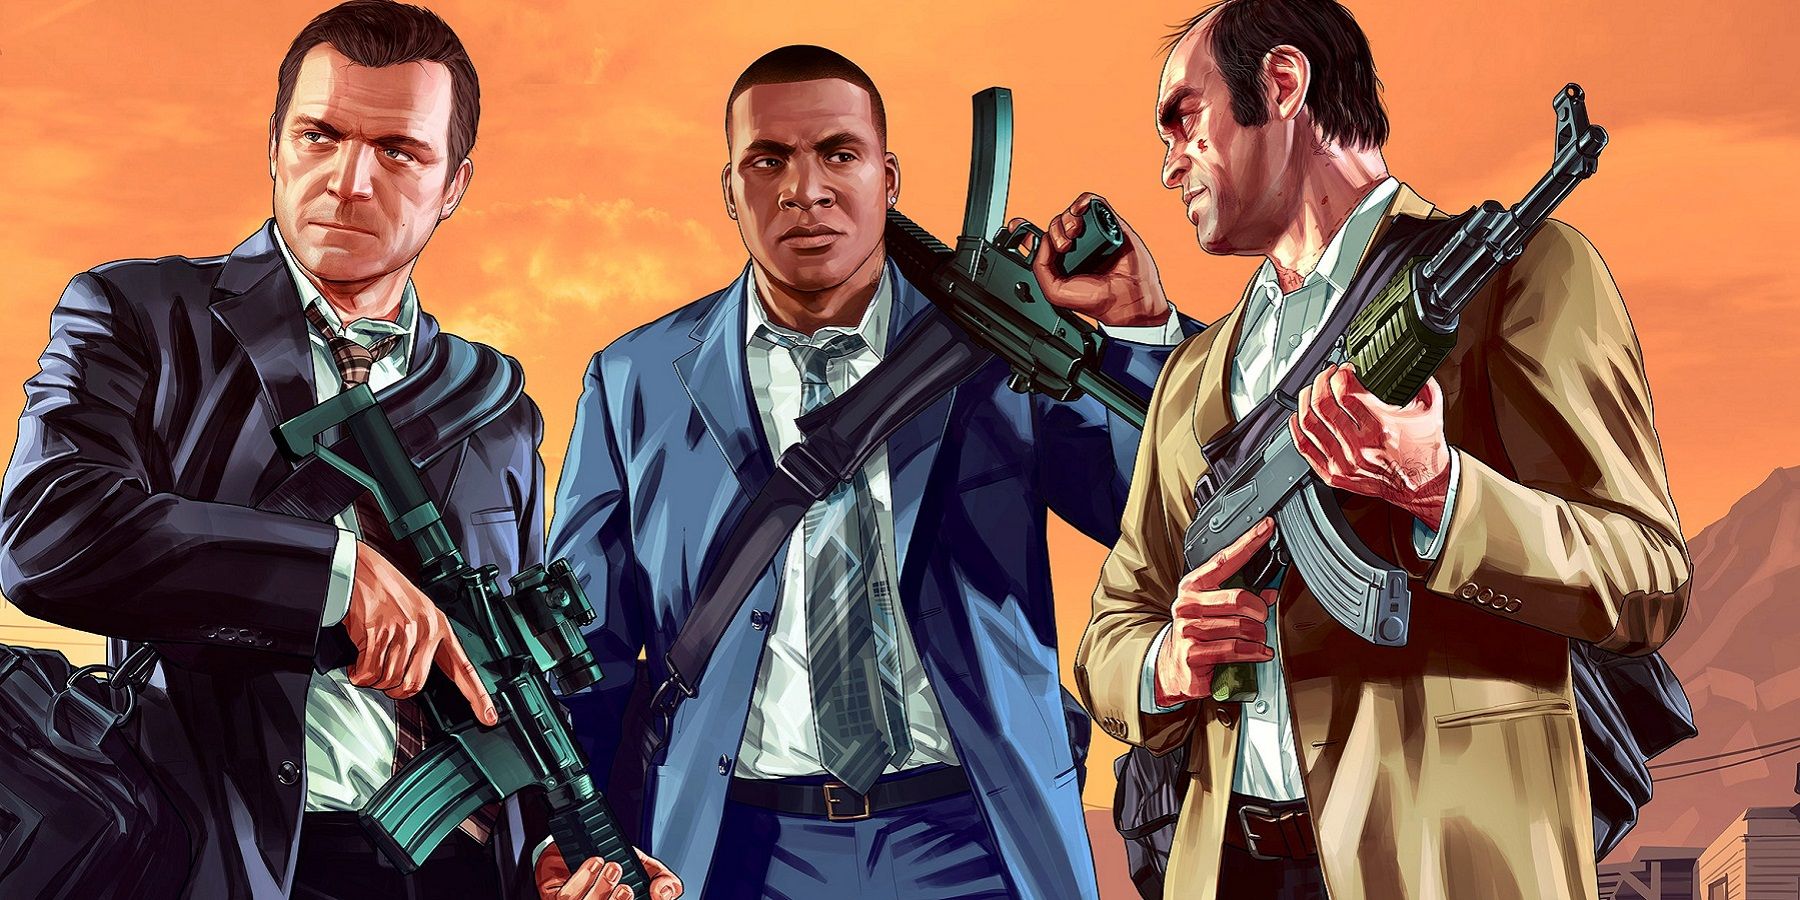 Rockstar wydaje się pożegnać się z Grand Theft Auto 5